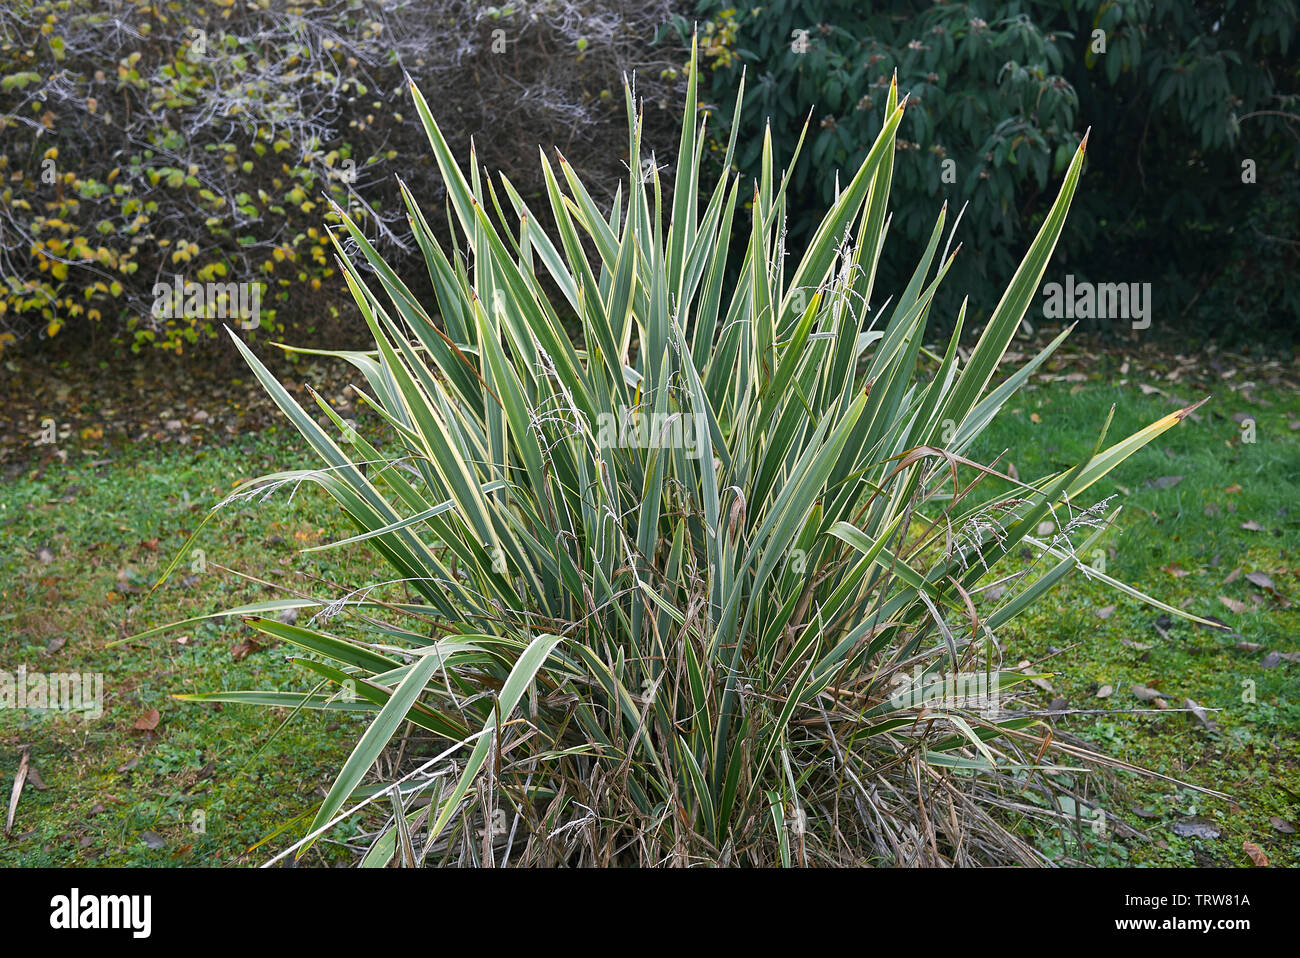 Phormium tenax variegatum plant in a garden Stock Photo